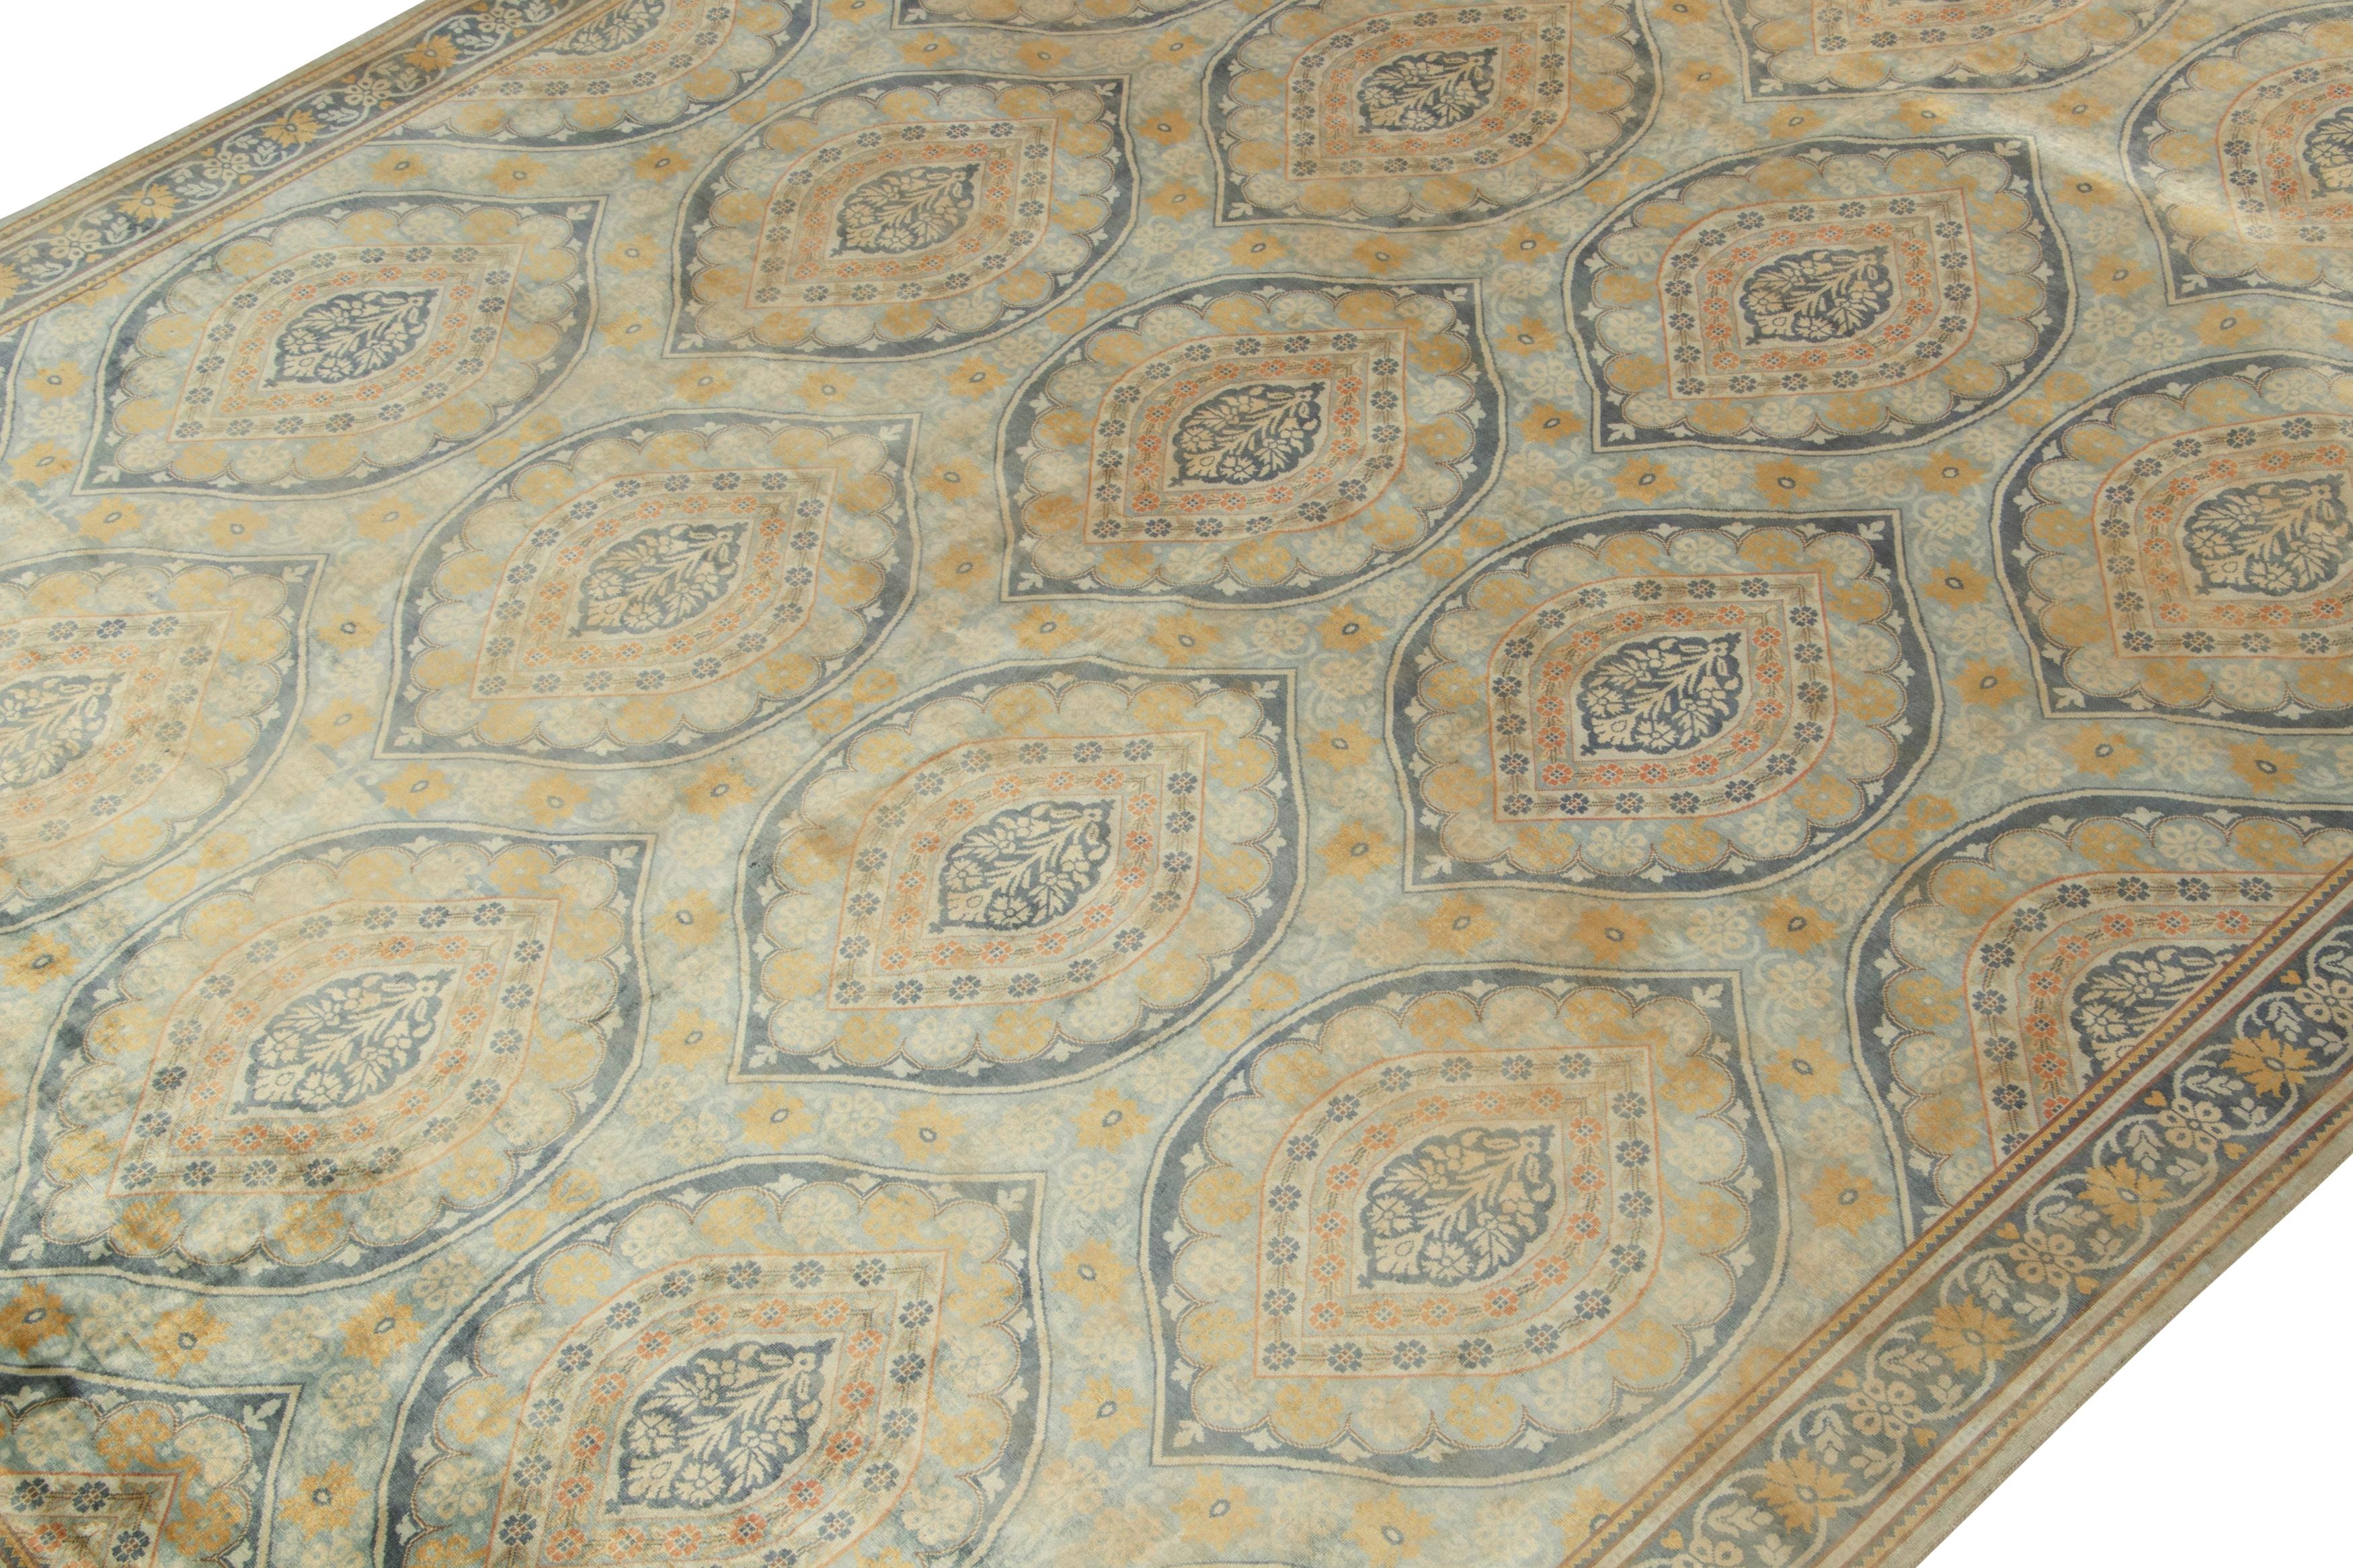 Ein 9x12 Teppich, inspiriert von klassischen Teppichstilen, aus der Modern Classics Collection'S von Rug & Kilim. Handgeknüpft aus Wolle und Seide, mit außergewöhnlichen Blautönen neben Gold in floralen Mustern mit eleganter Anmut.
Weiter zum